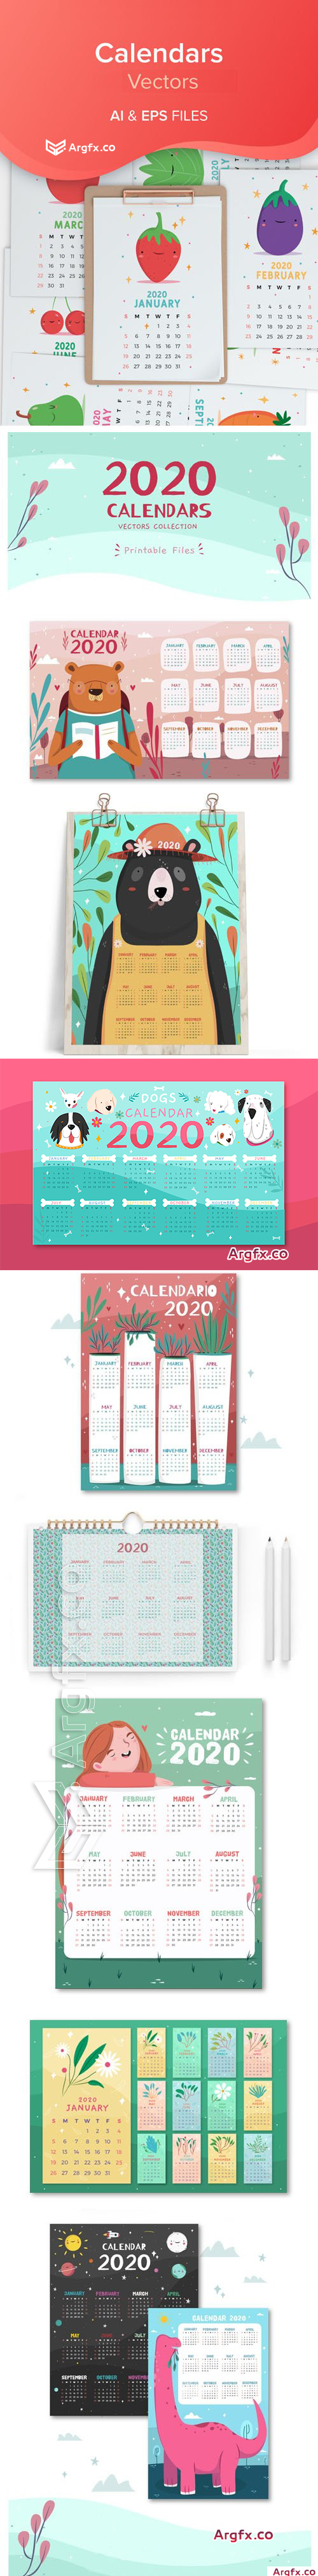 2020 Calendars Vector Collection 2